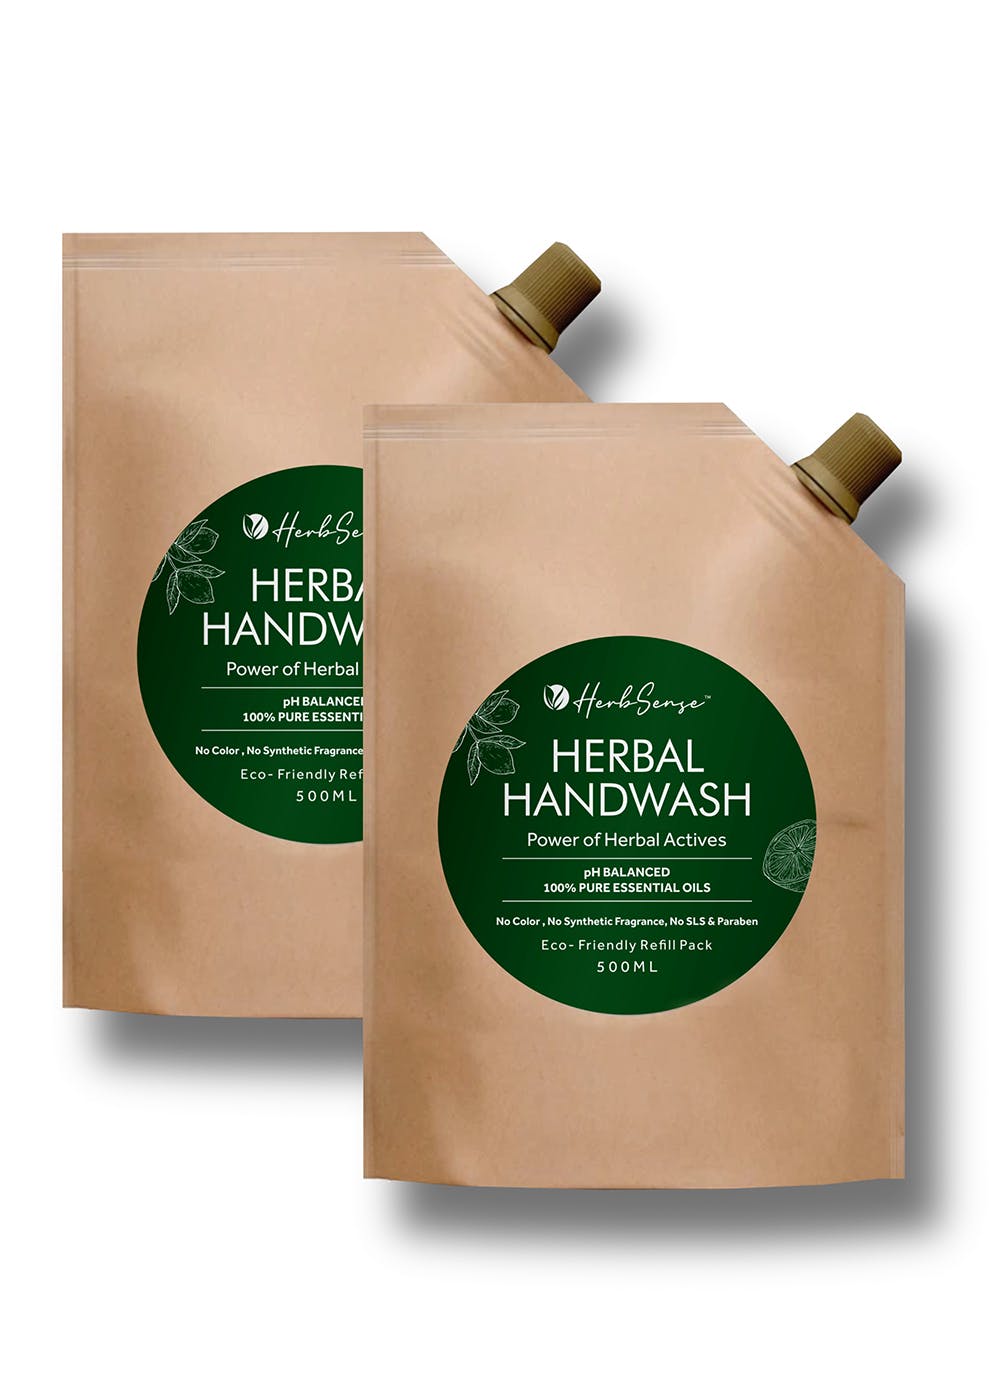 Herbal Handwash - Eco Friendly Refill Pack - Pack of 2 (500ml Each)